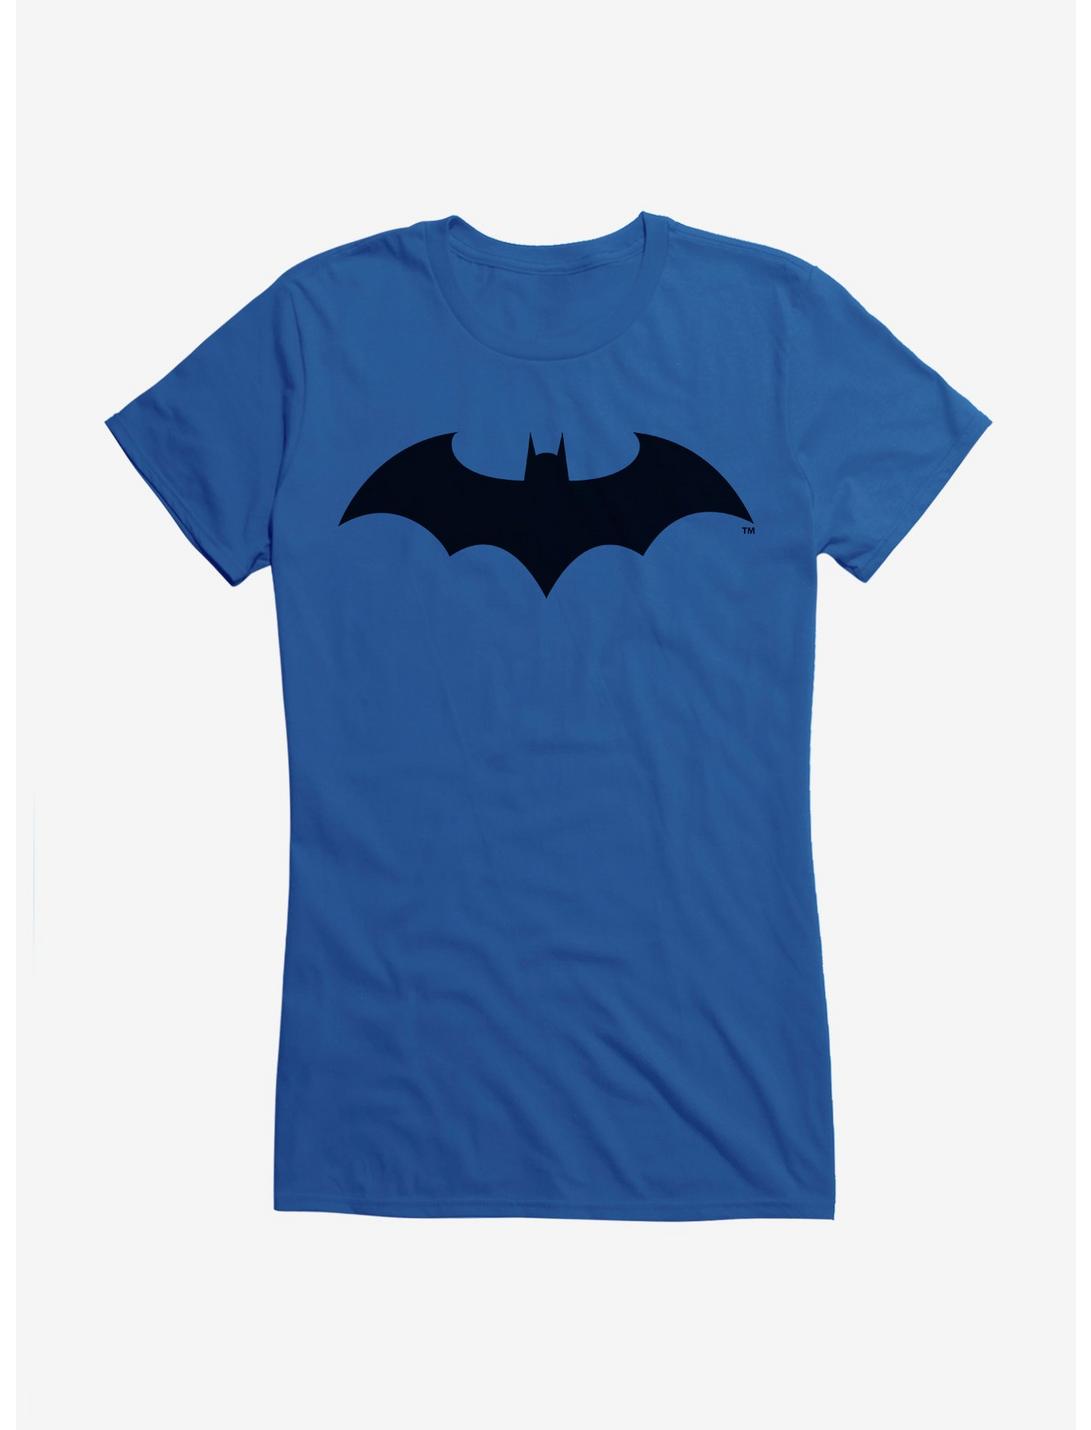 DC Comics Batman Earth One Logo Girls T-Shirt, , hi-res